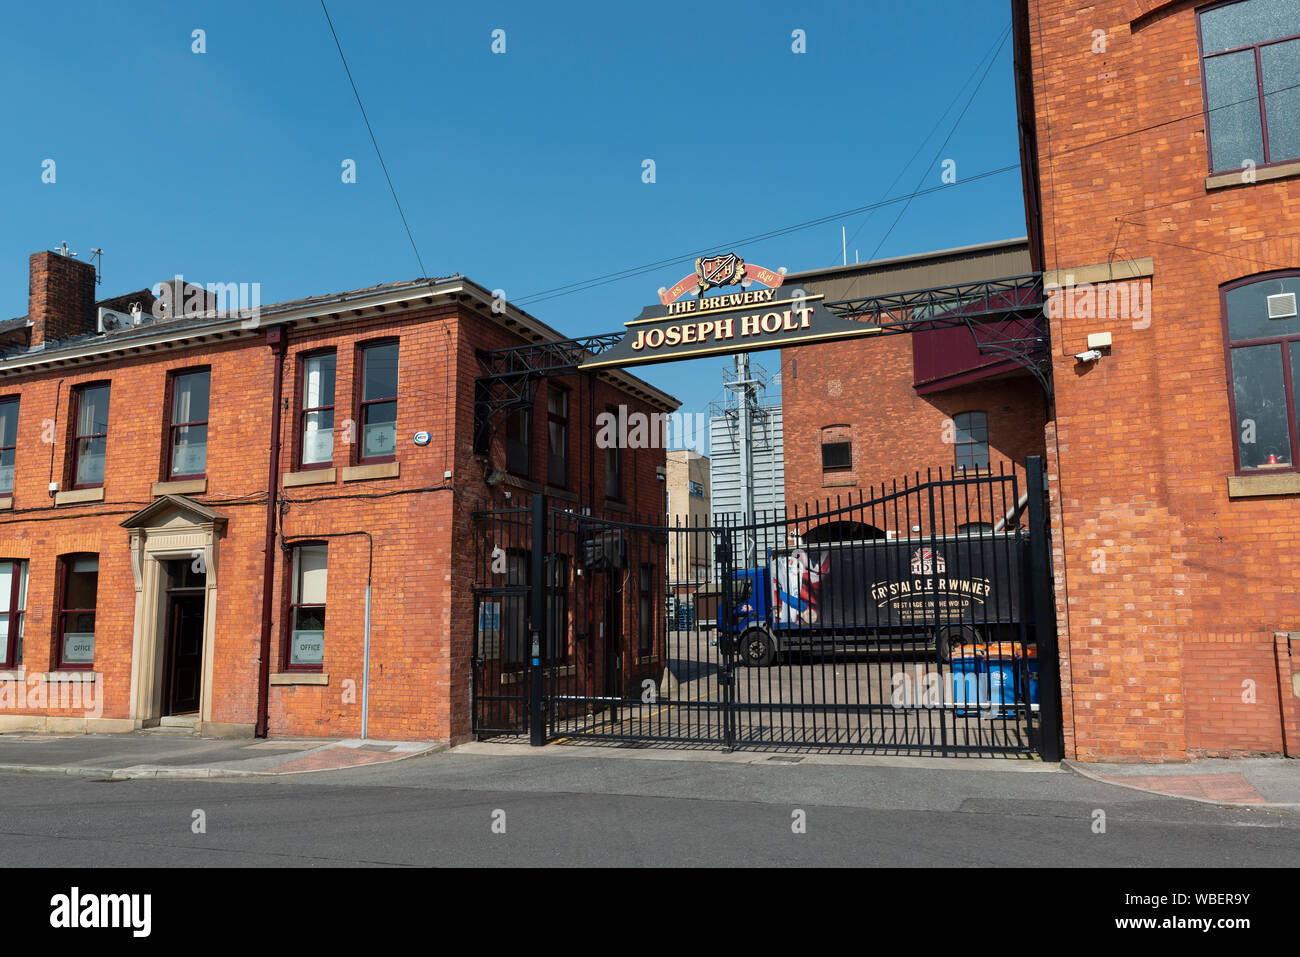 L'entrée de Joseph Holt brasserie située sur la rue de l'Empire dans la région de Strangeways Manchester, UK. Banque D'Images